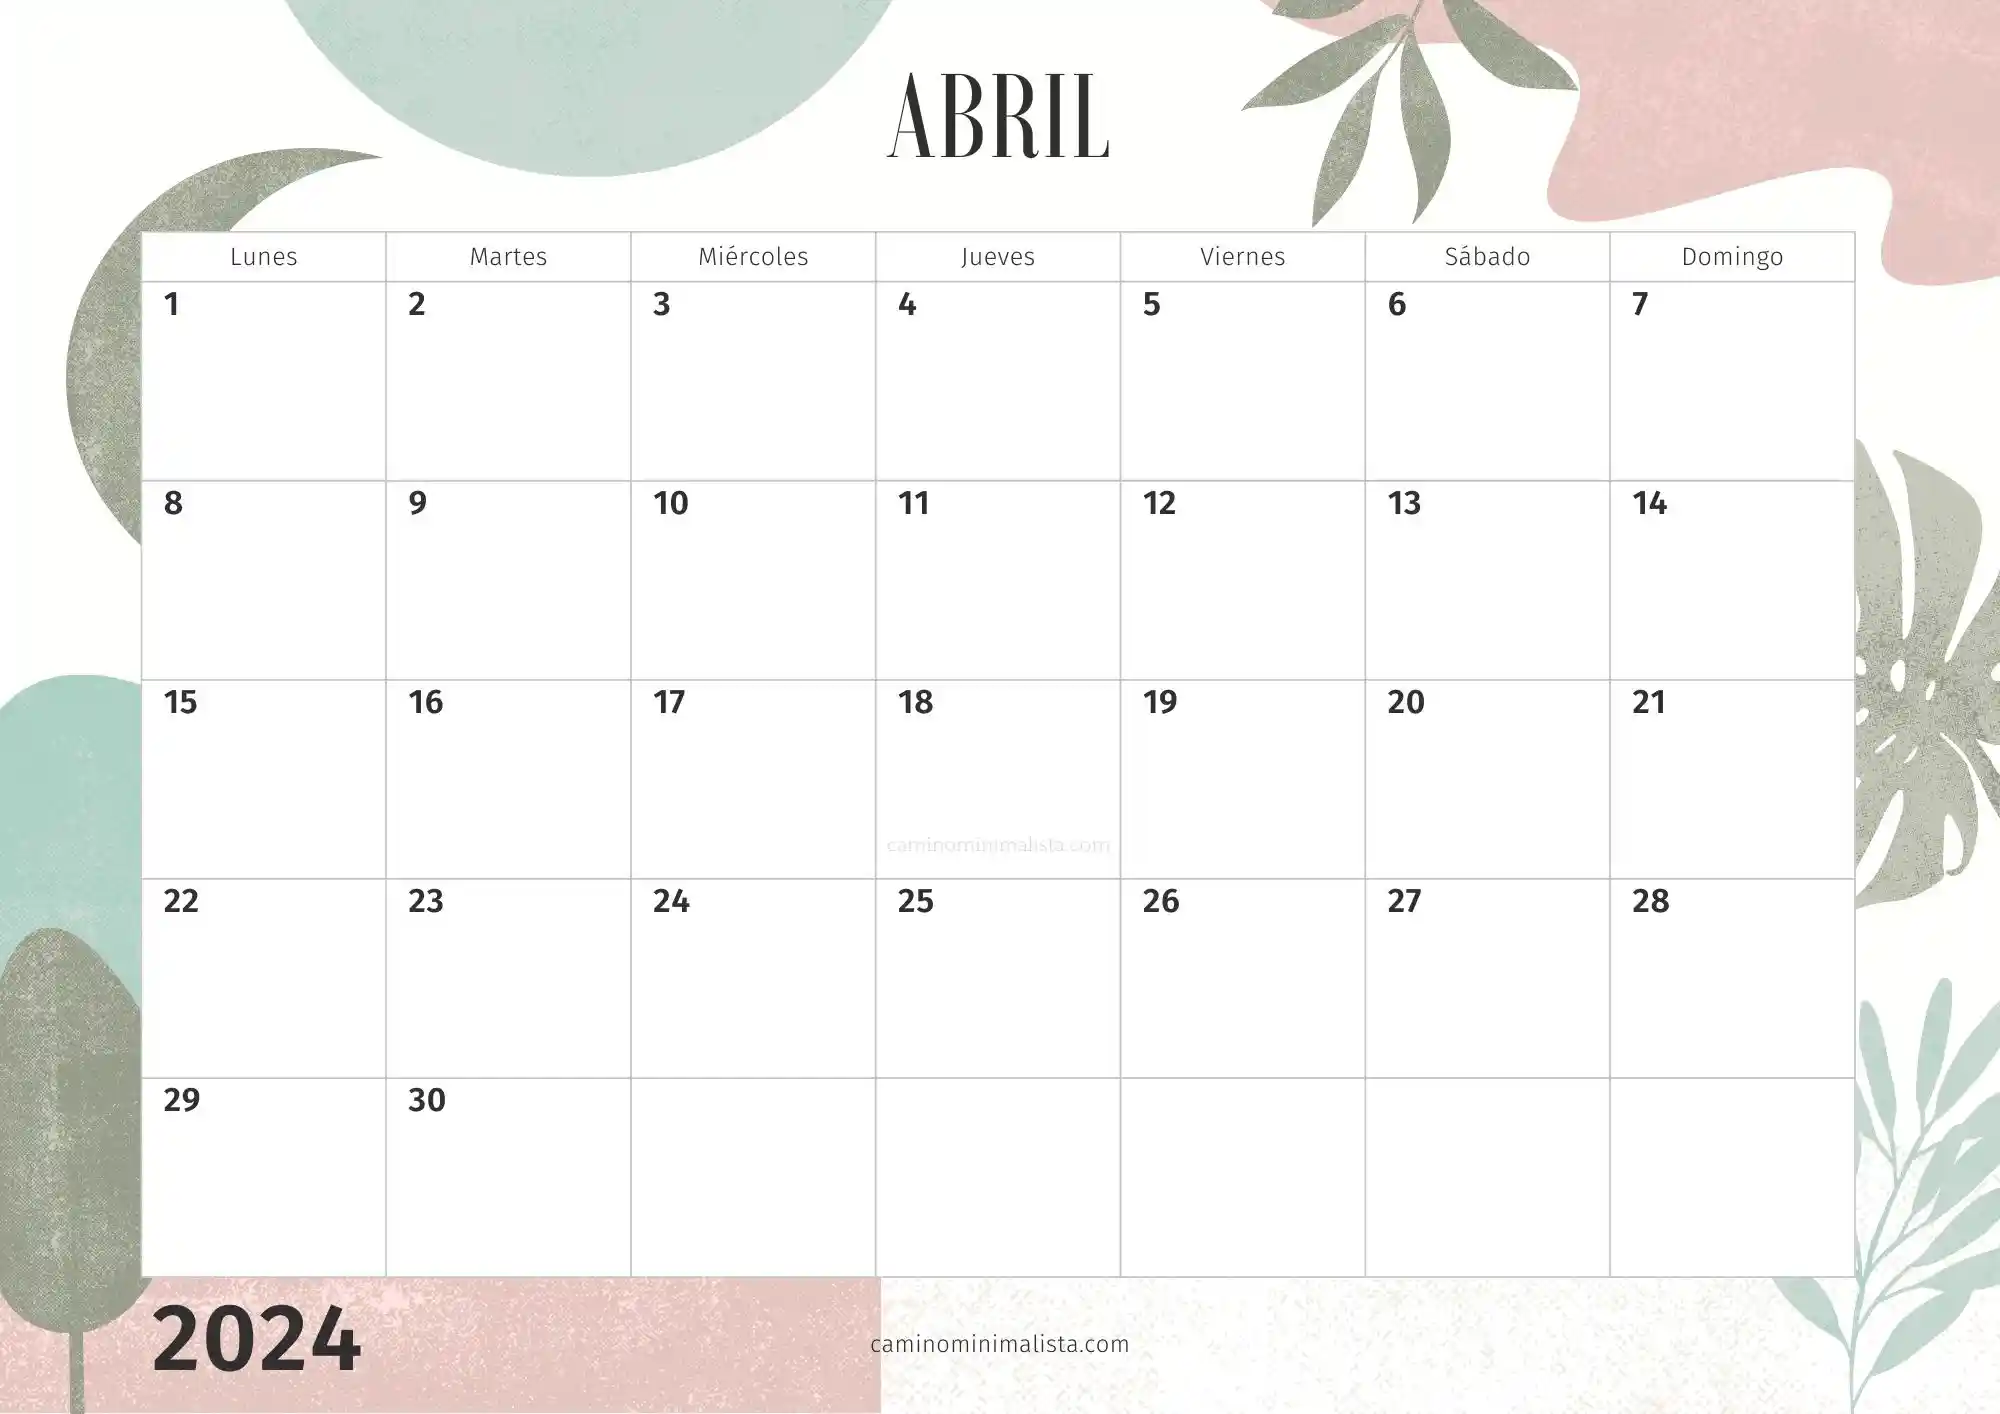 Calendario Abril 2024 decorado bonito